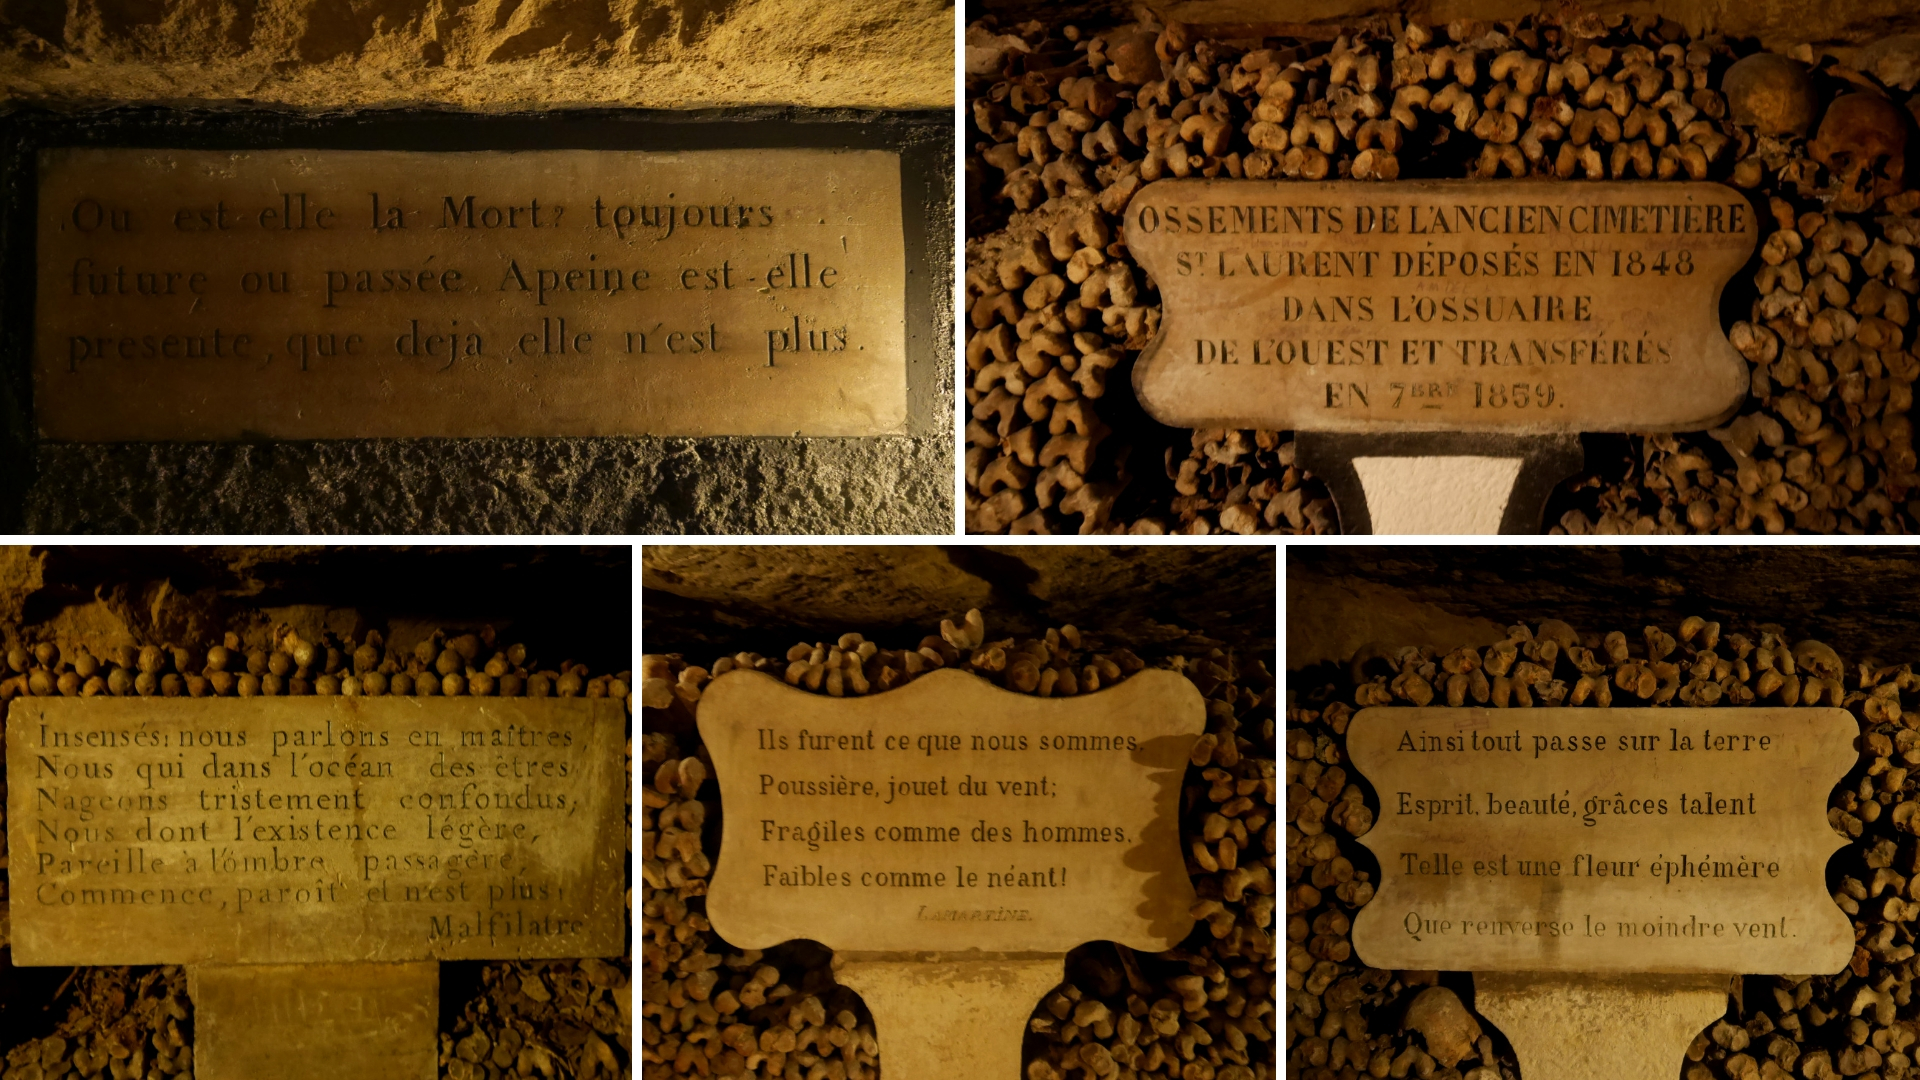 visiter catacombes paris gothique infos pratiques blog voyage france arpenter le chemin